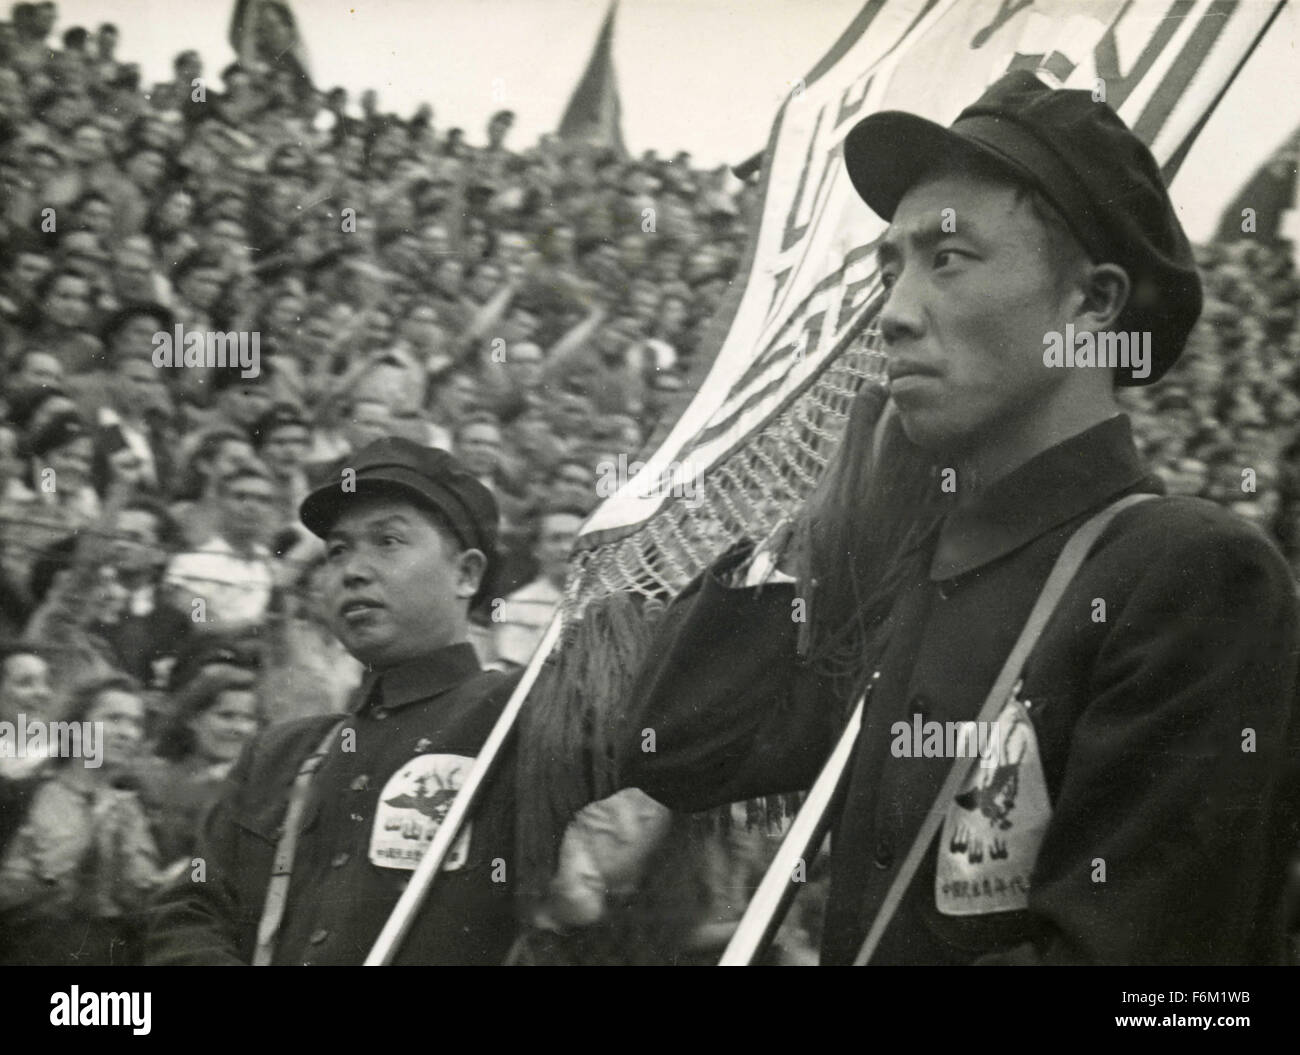 Festival du monde 1949 Budapest : parade et procession délégation chinoise Banque D'Images